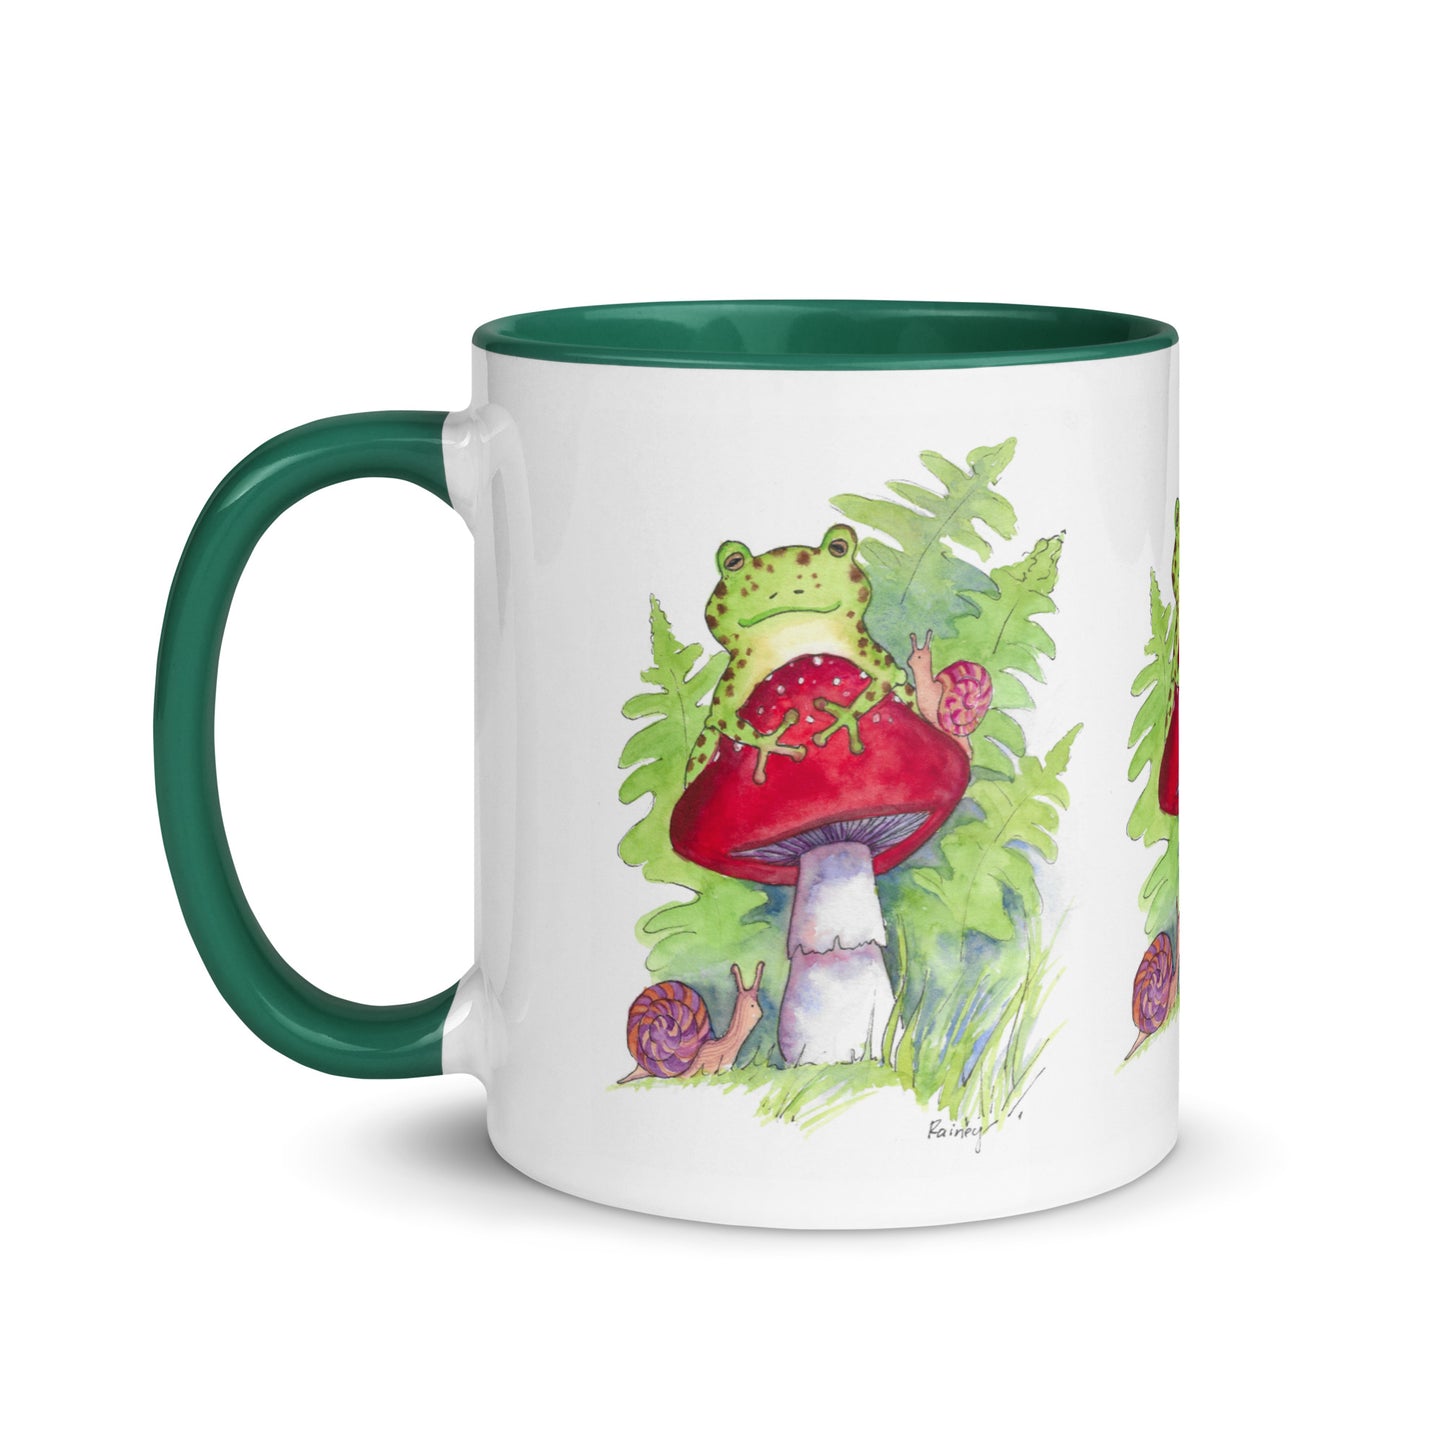 "It's Fun Being Green!" Coffee or Tea Mug